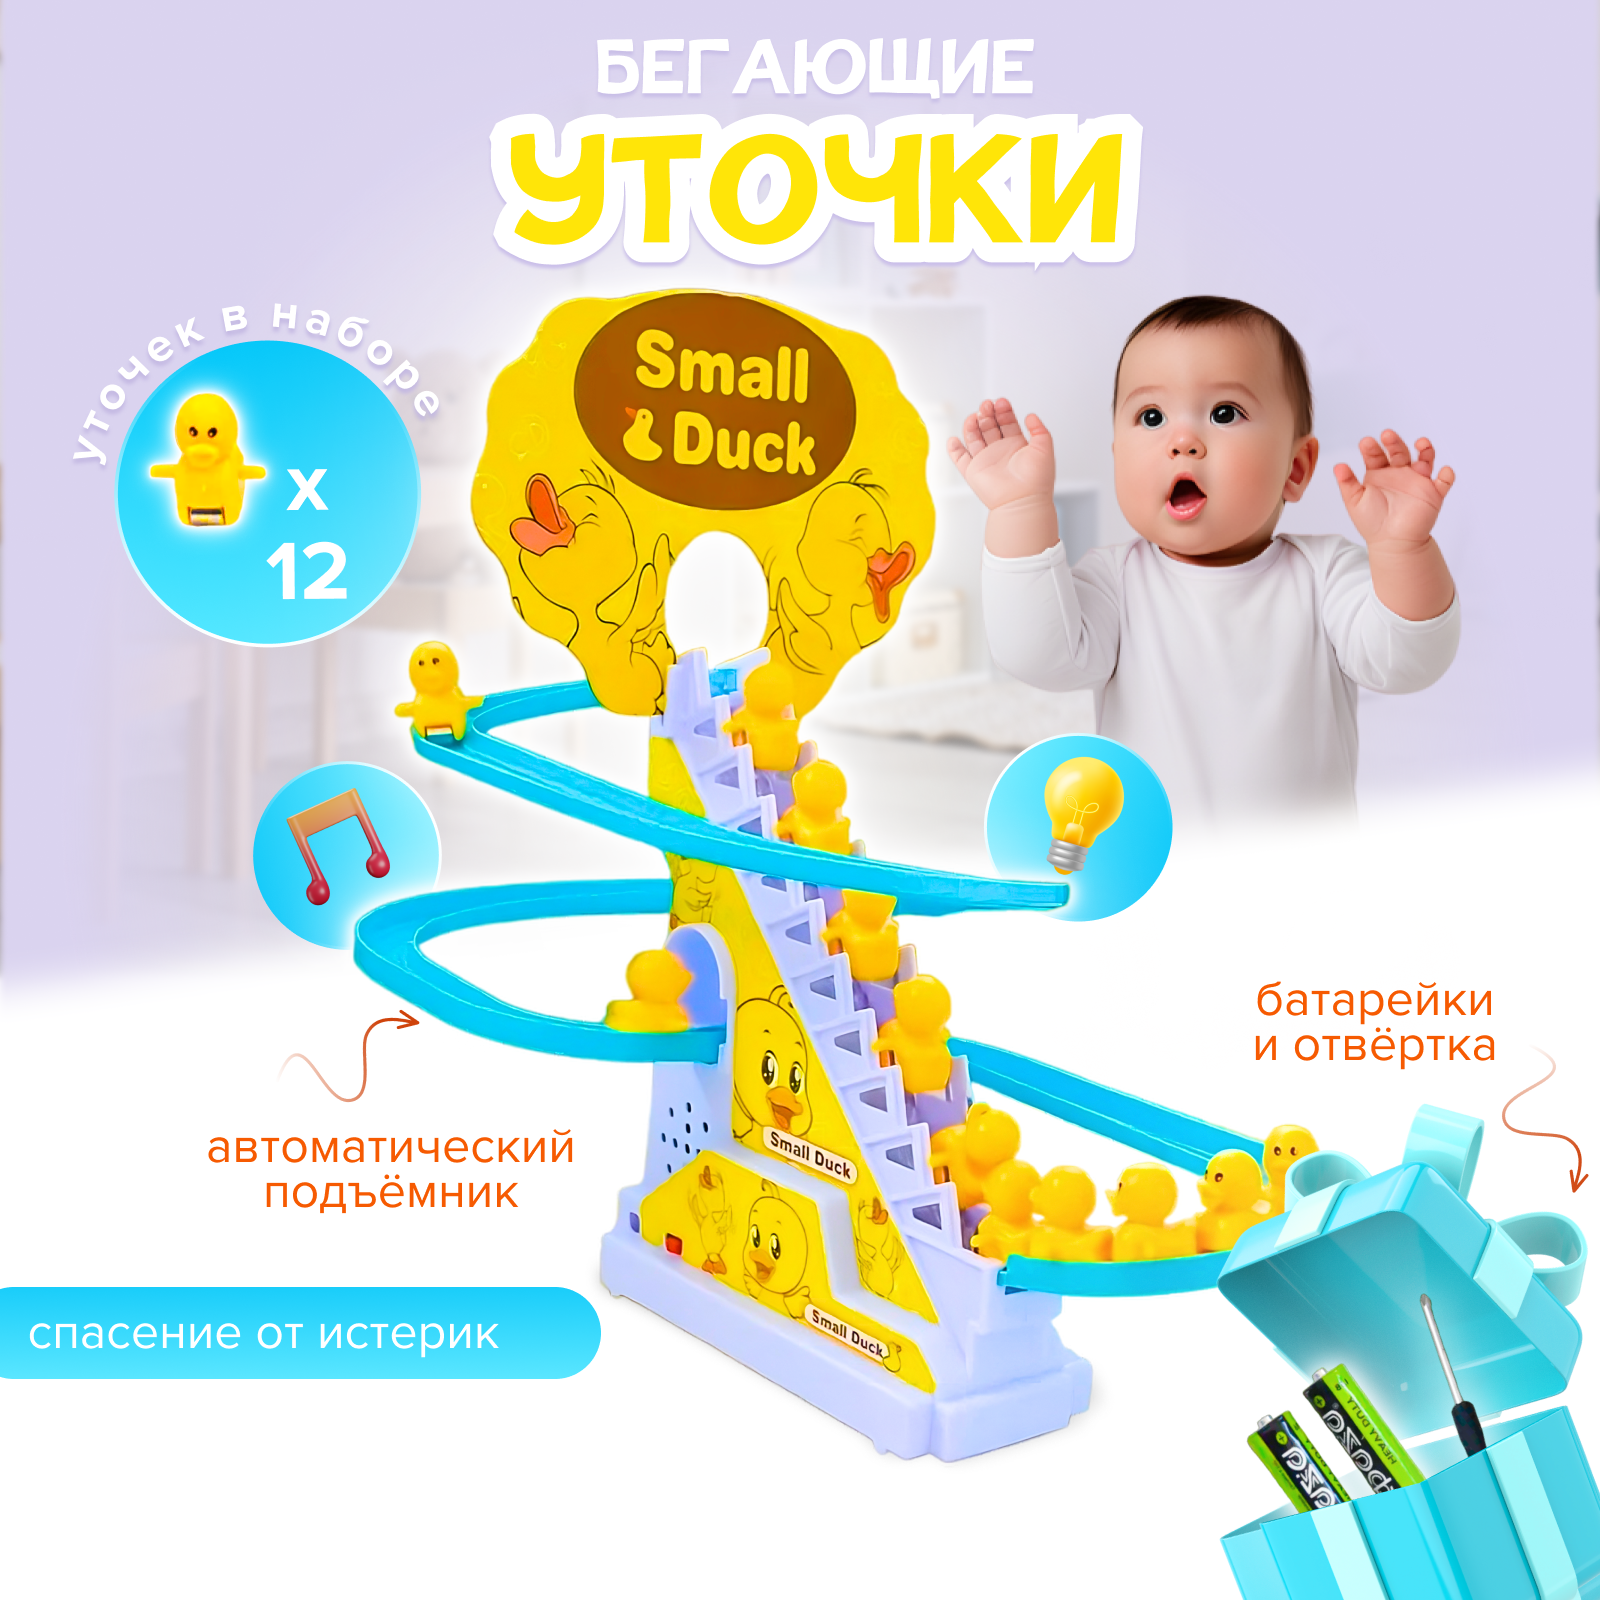 Бегающие уточки на лестнице развивающая интерактивная игрушка для детей подарок для девочки мальчика малыша горка small duck